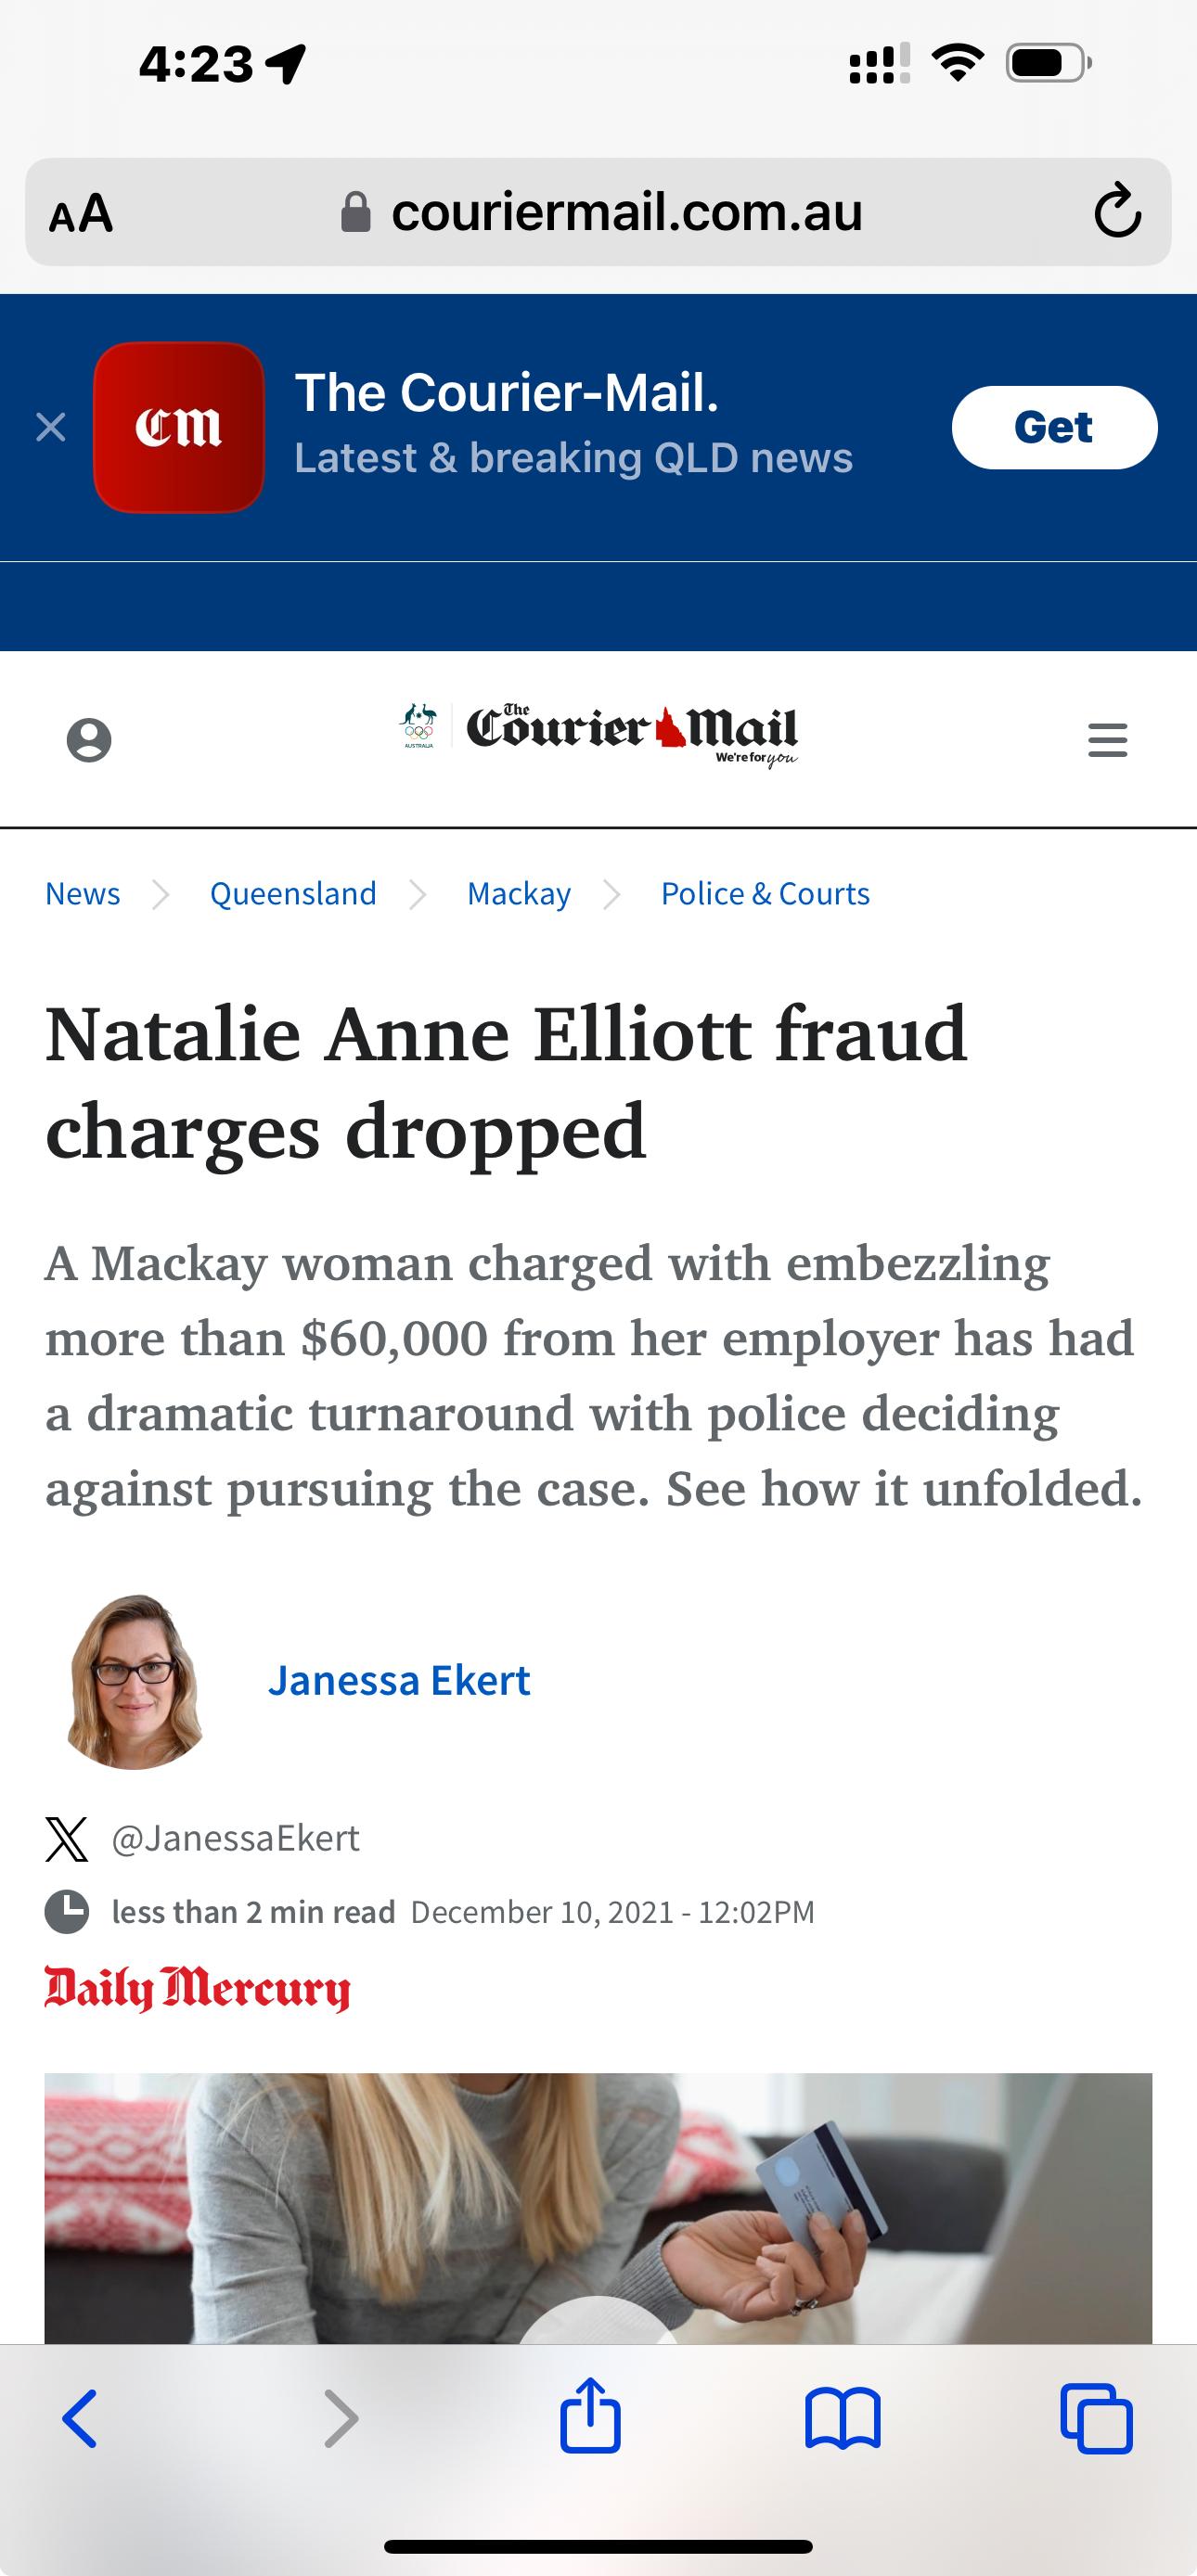 Natalie Elliot - Australian fraud case 